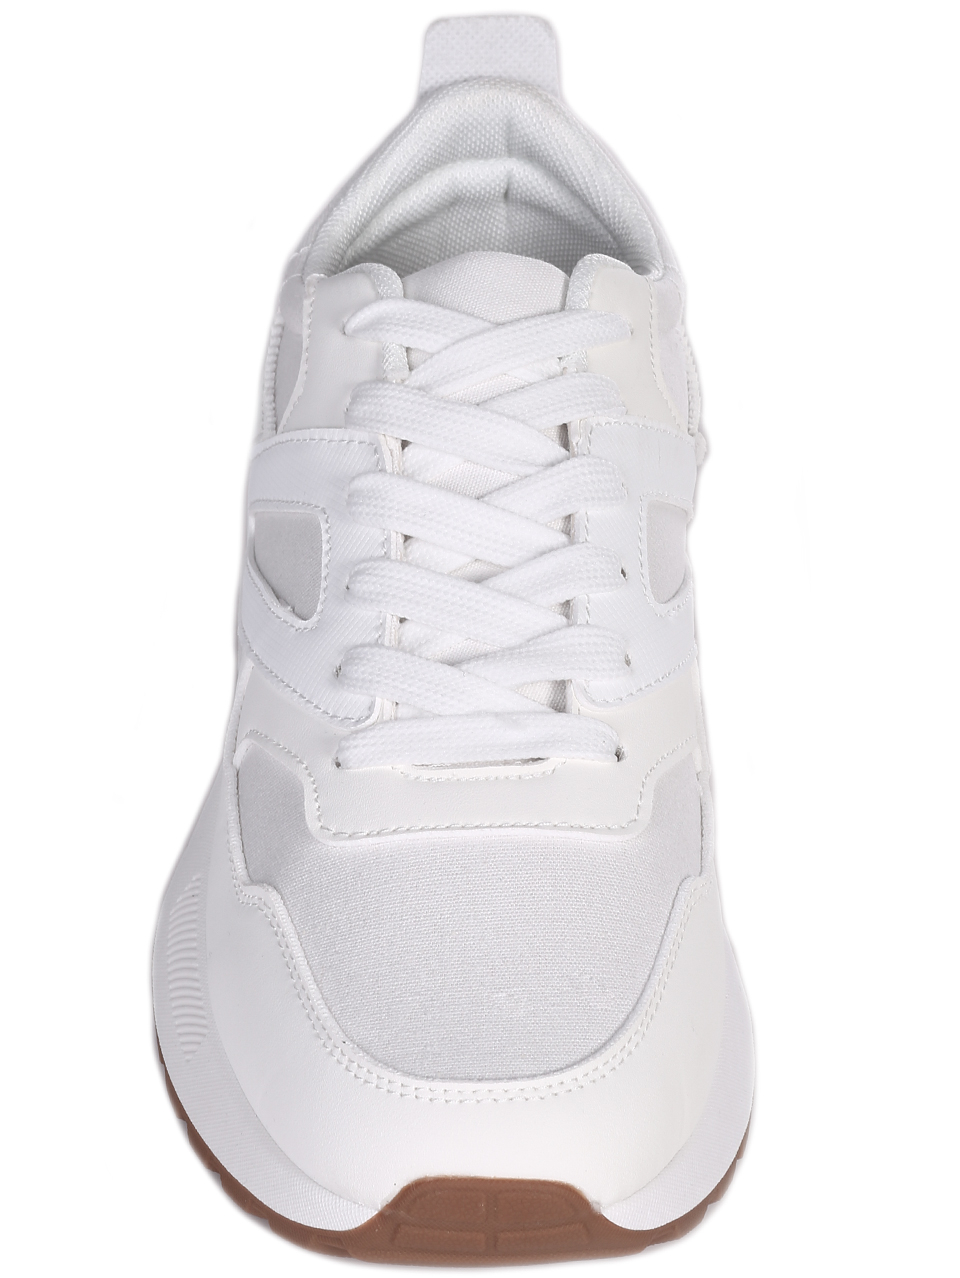 Ежедневни мъжки комфортни обувки в бяло 7U-24084 white